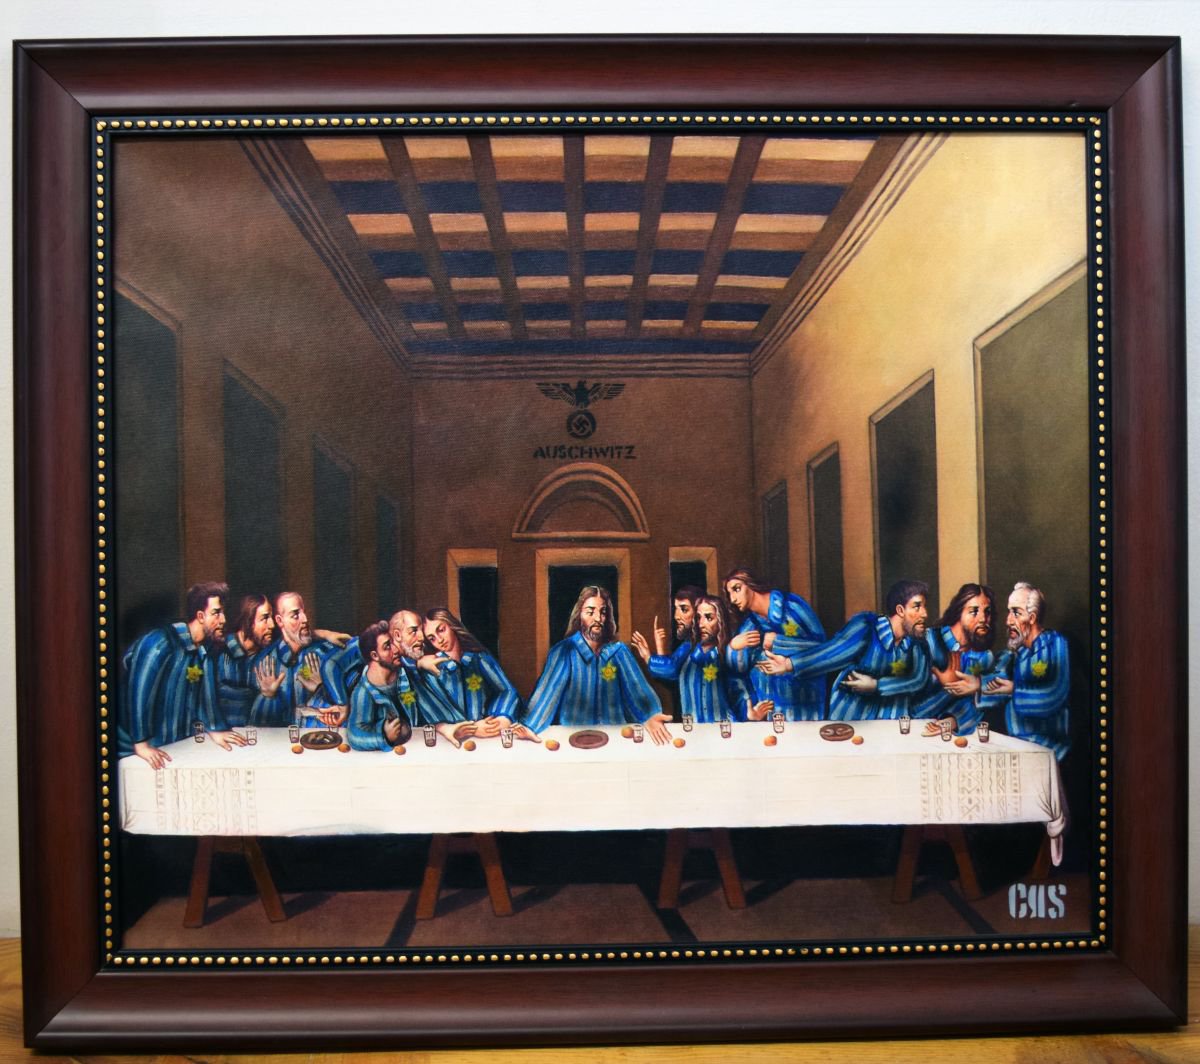 The Last supper of Auschwitz by Christos Kakoulli